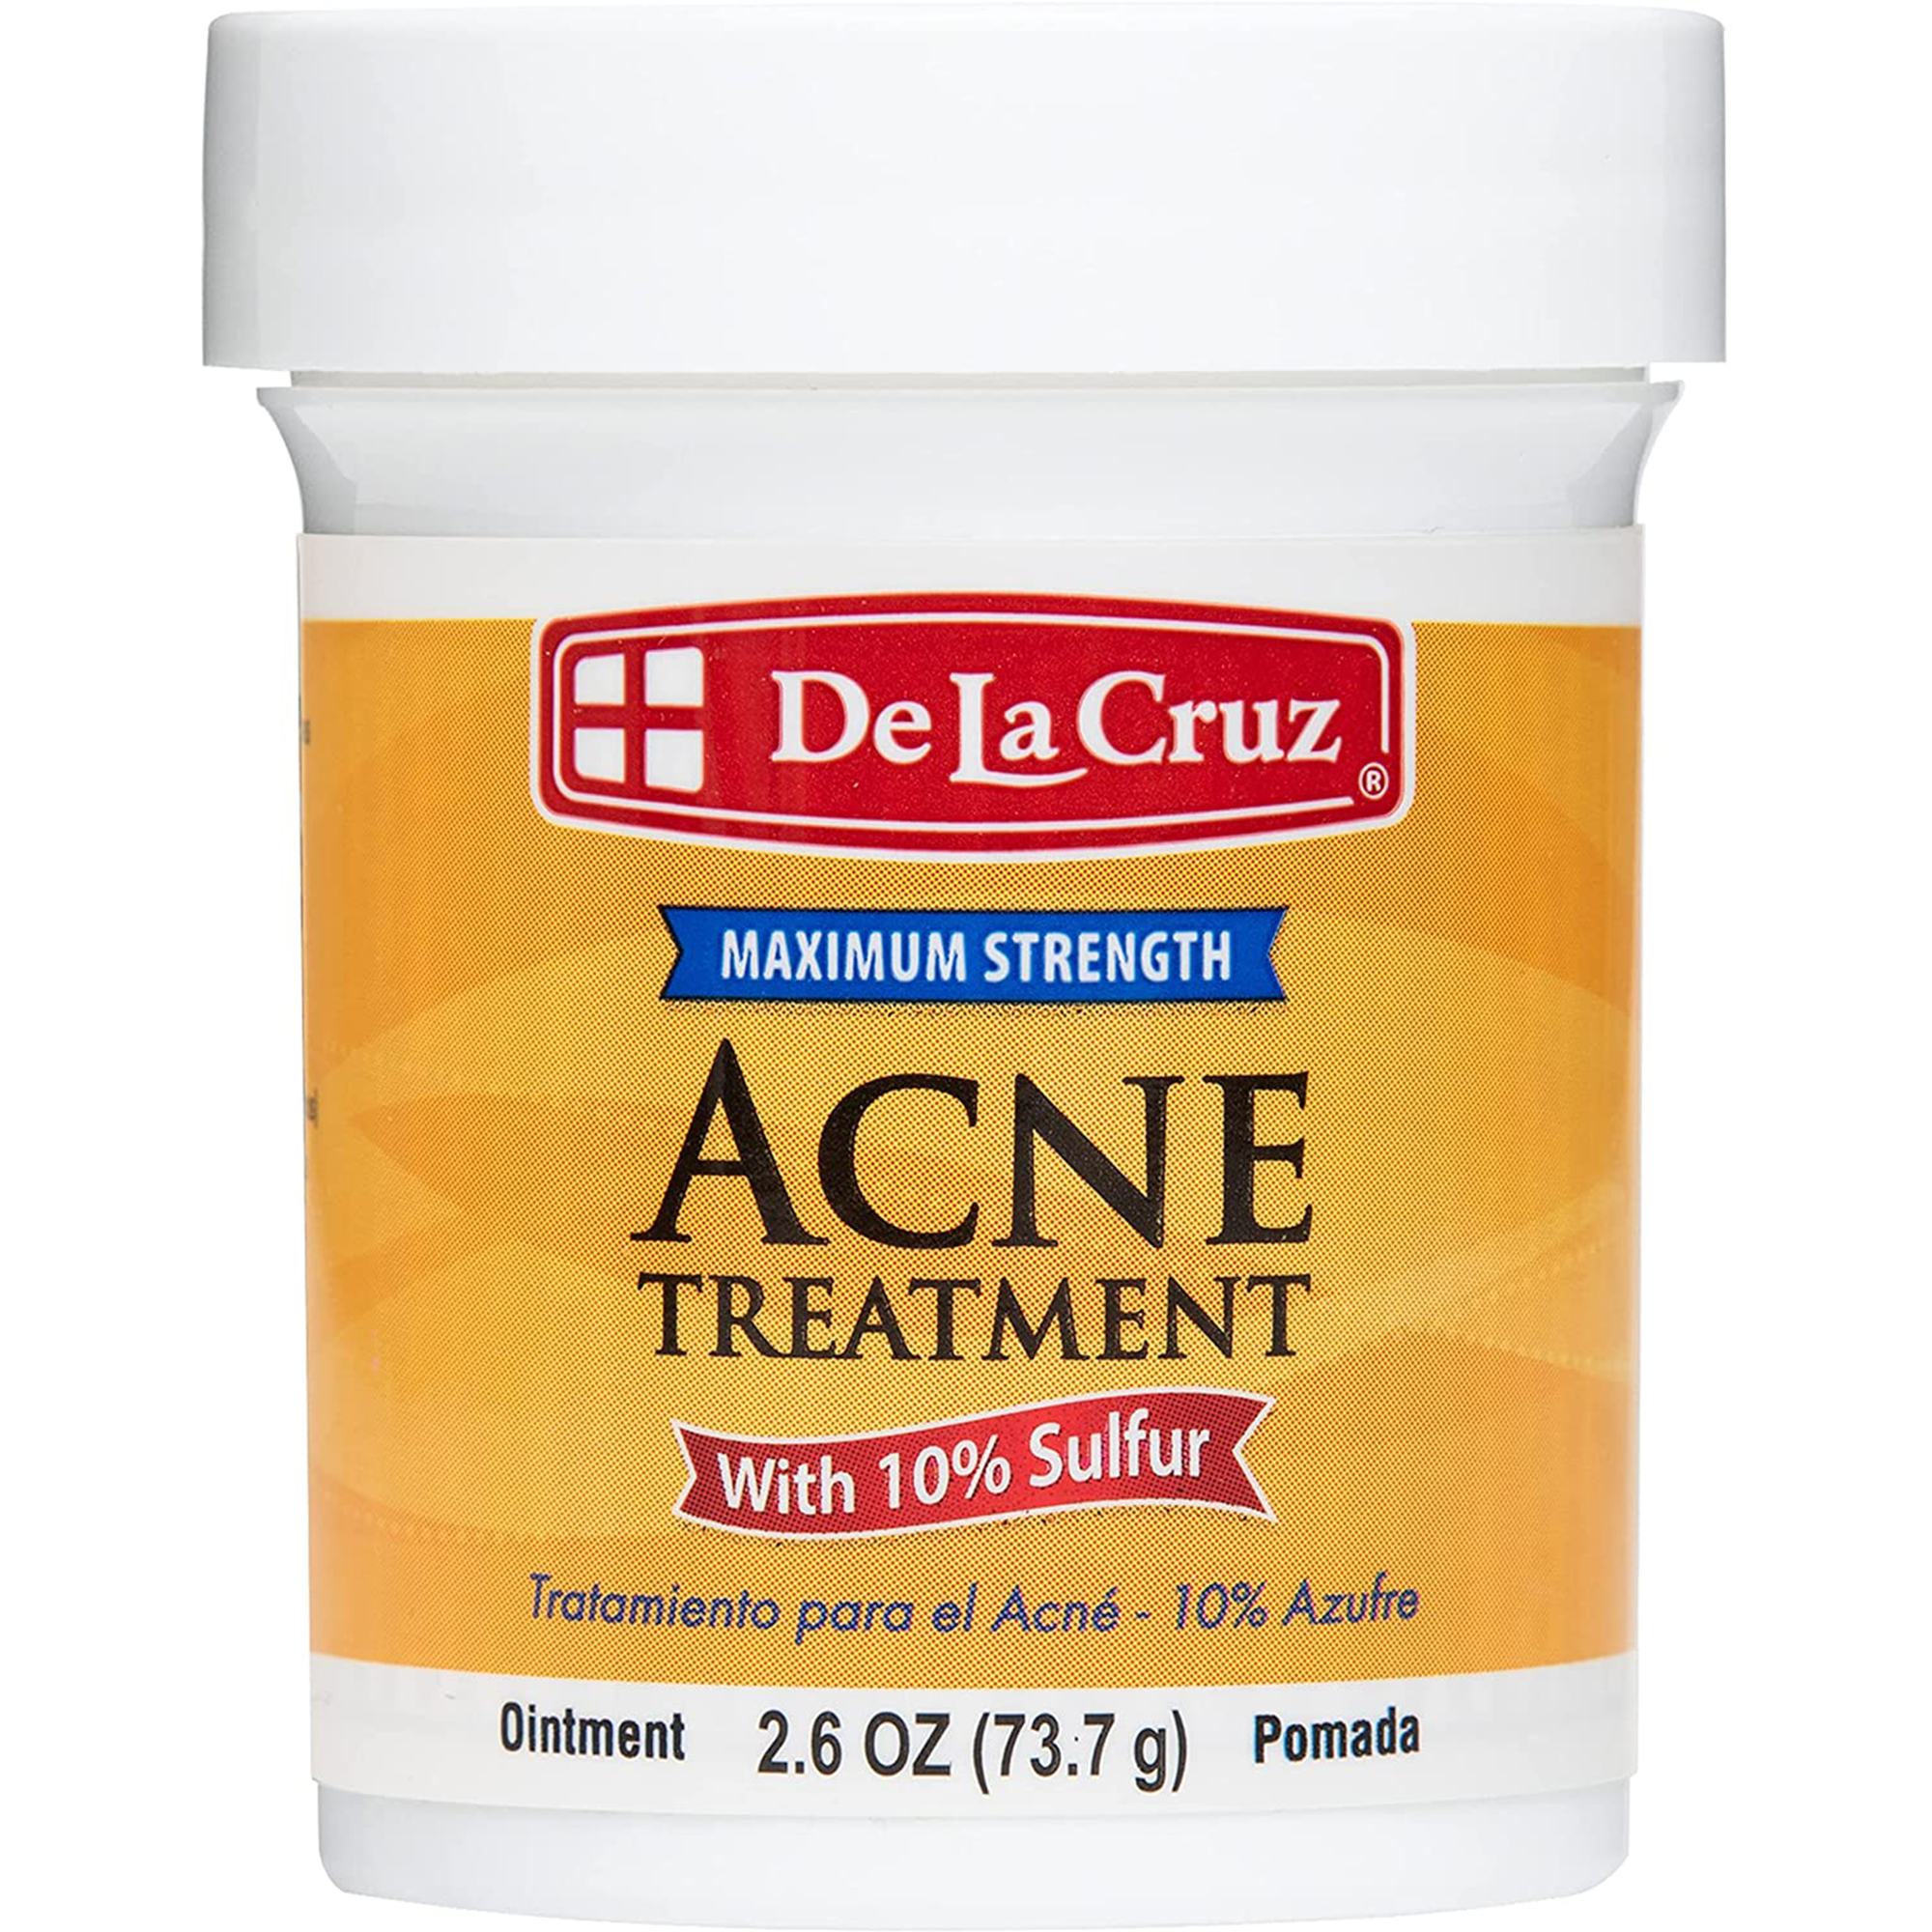 De La Cruz Acne Treatment with 10% Sulfur for Cystic Acne, Pimples Blackheads 2.6 Oz - image 1 of 9